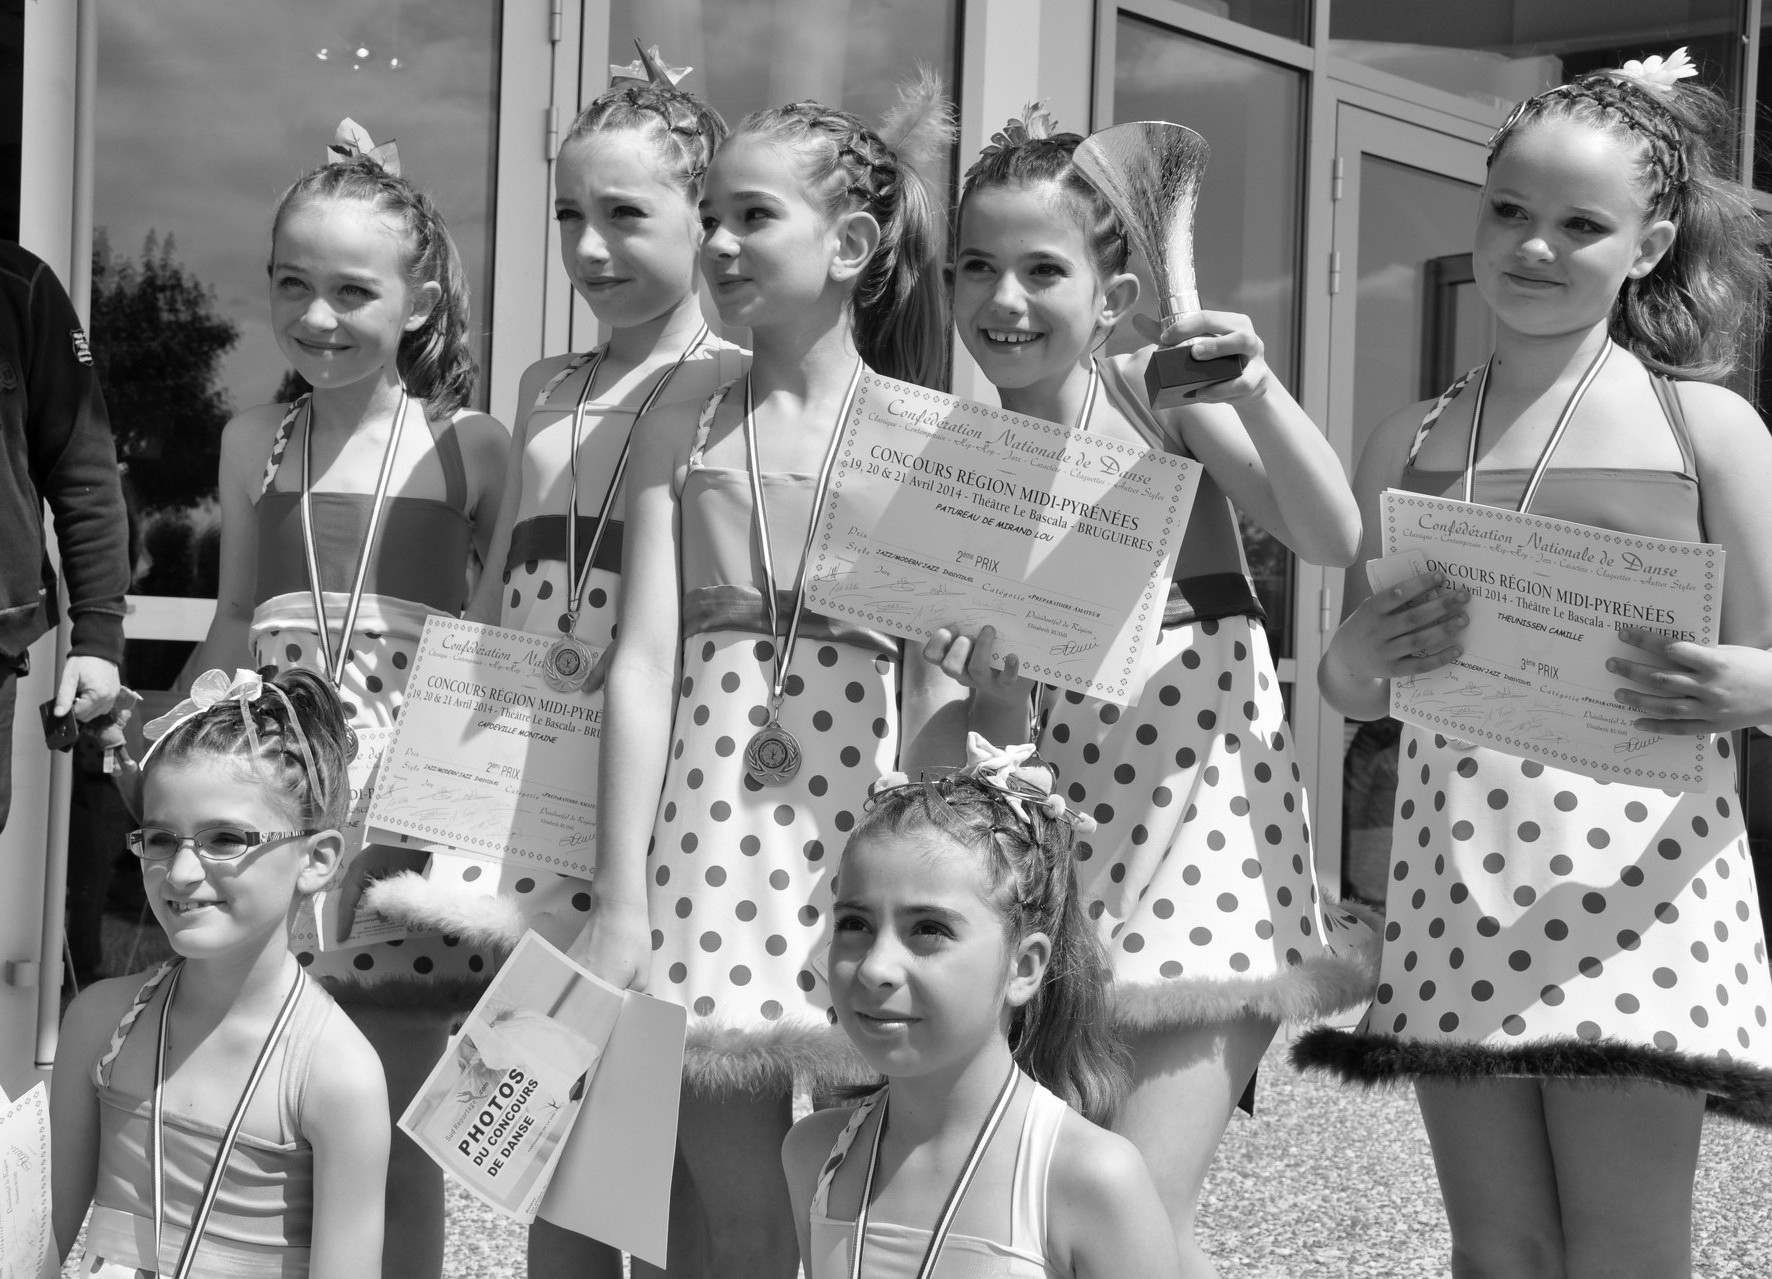 Résultats du Concours de la Confédération National de Danse Région Midi-Pyrénées 2014 - 1er prix régional pour le groupe Cupcakes